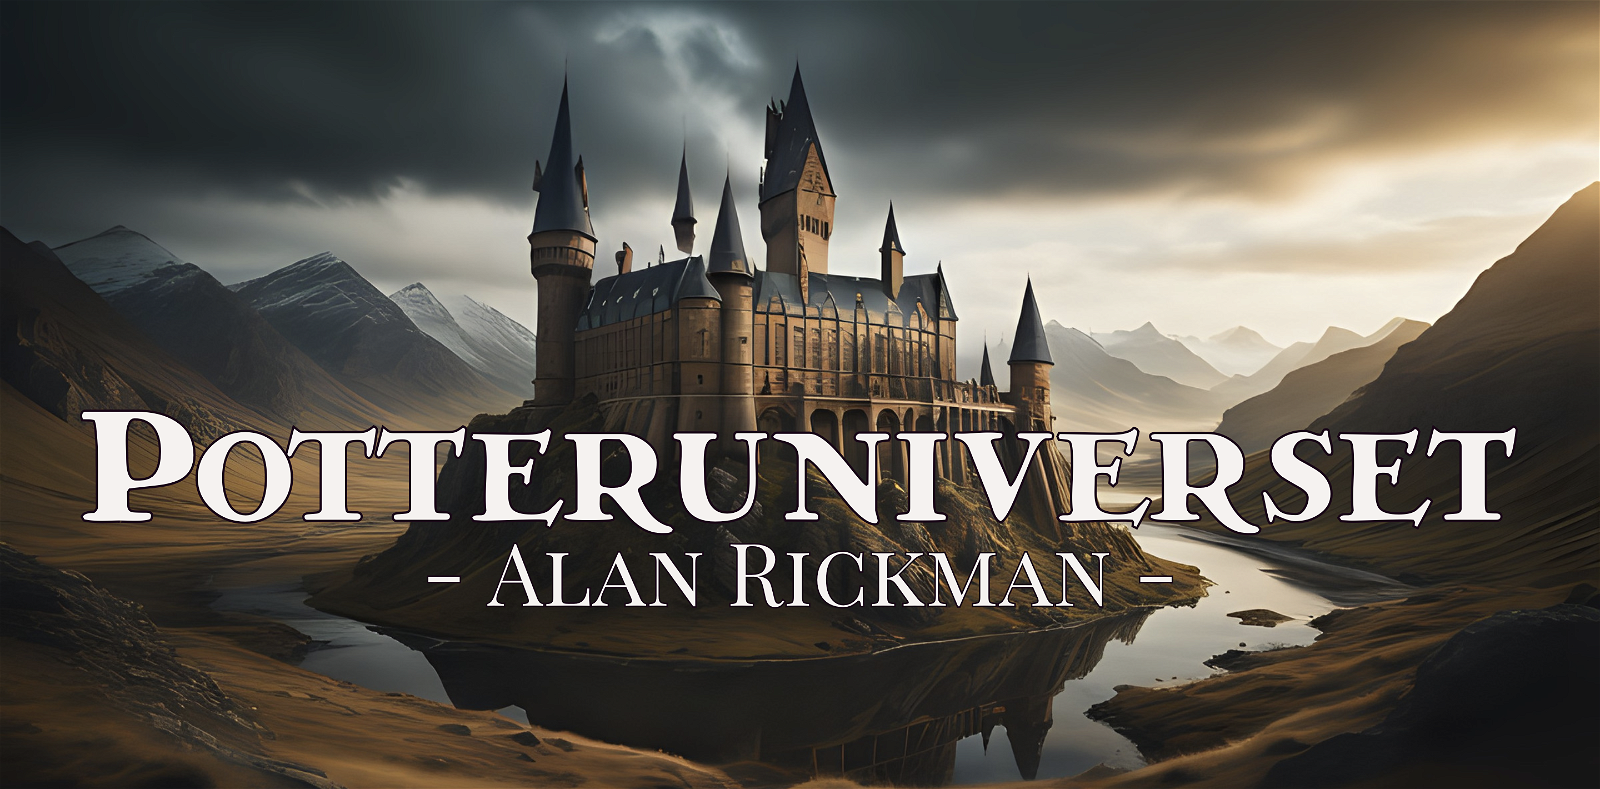 Potteruniverset: Alan Rickman